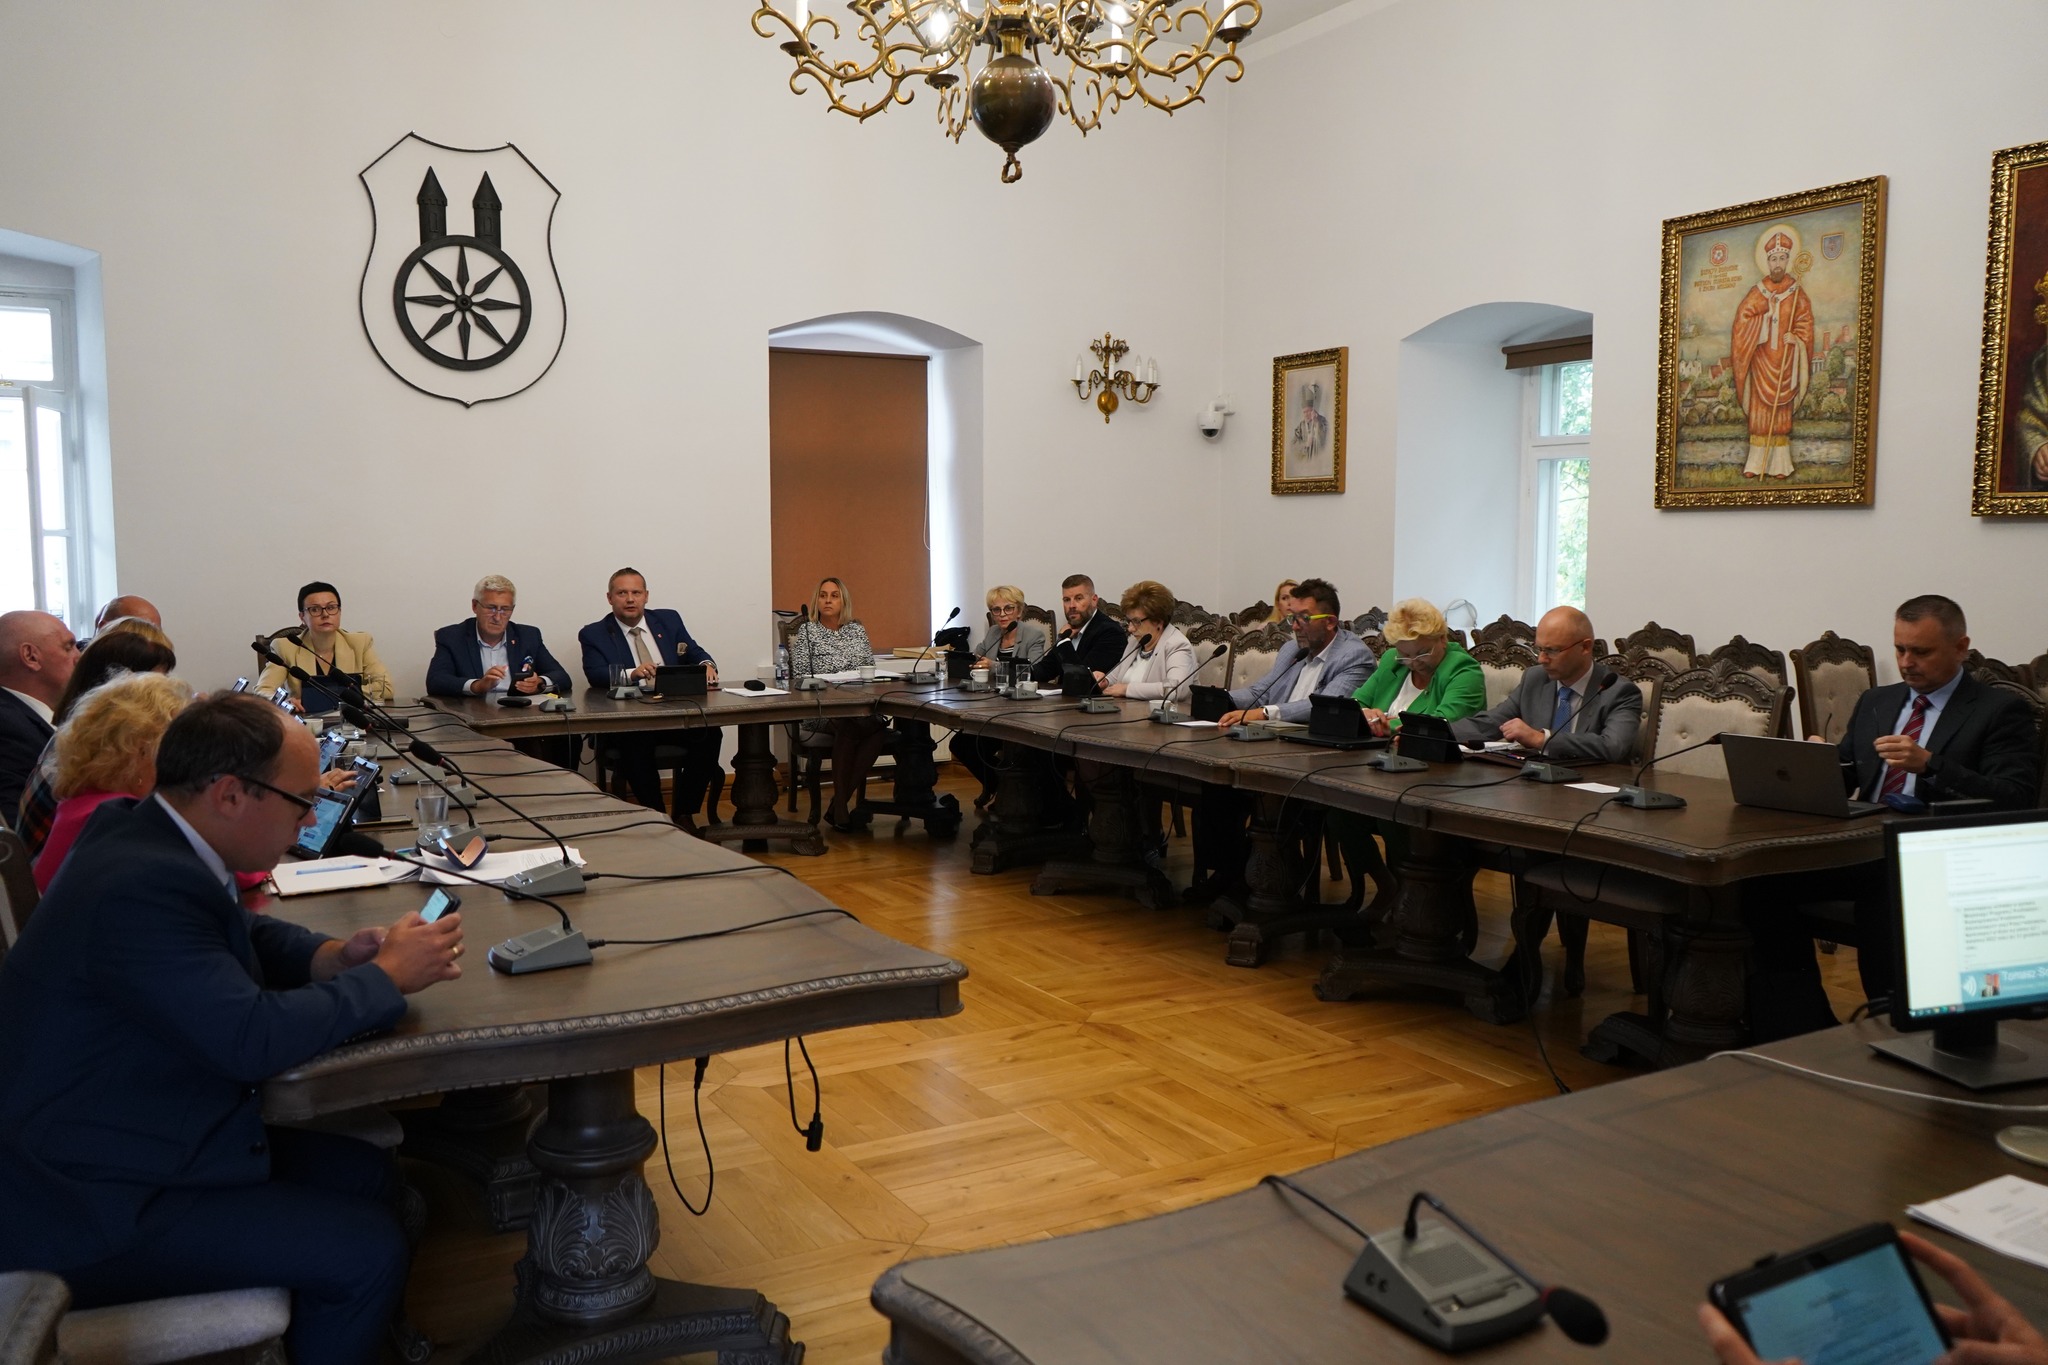 Radni Rady Miejskiej Koła w sali sesyjnej w Ratuszu w Kole.